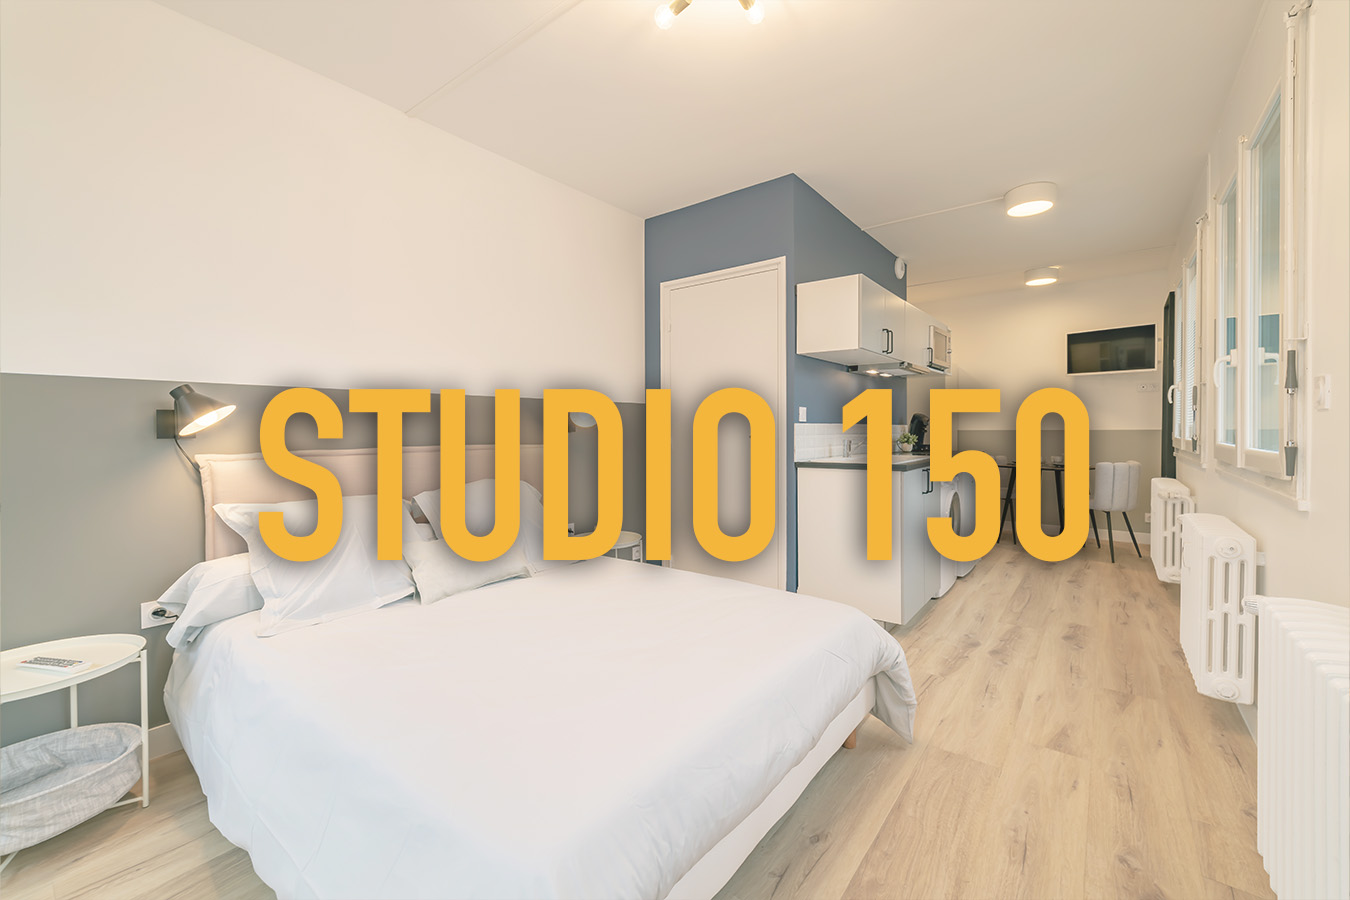 Studio 150